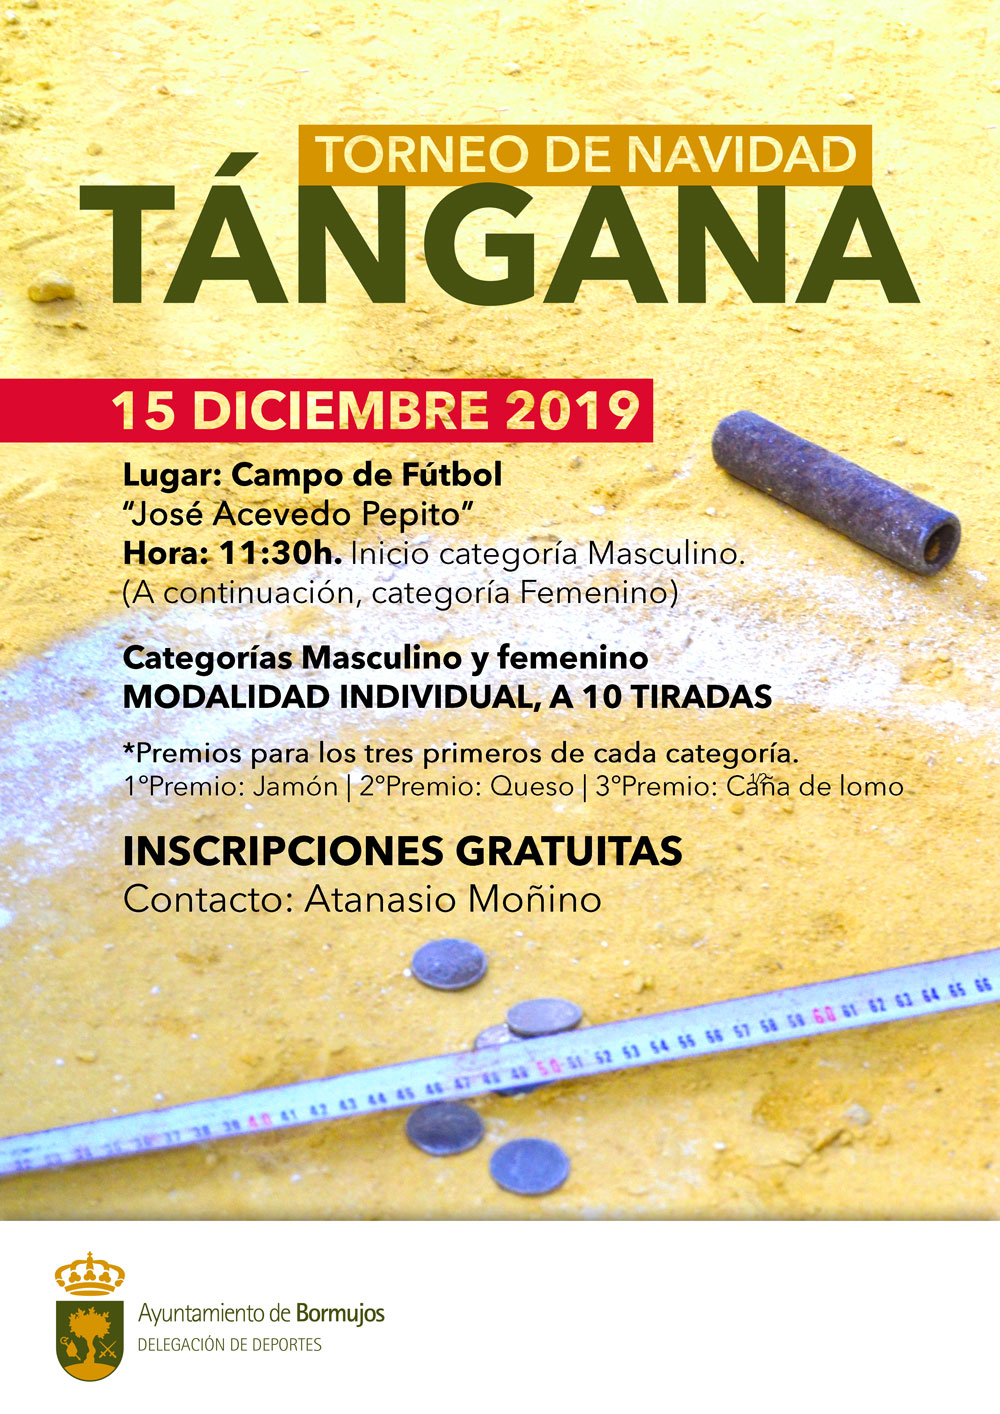 TORNEO-TANGANA-DICIEMBRE-2019